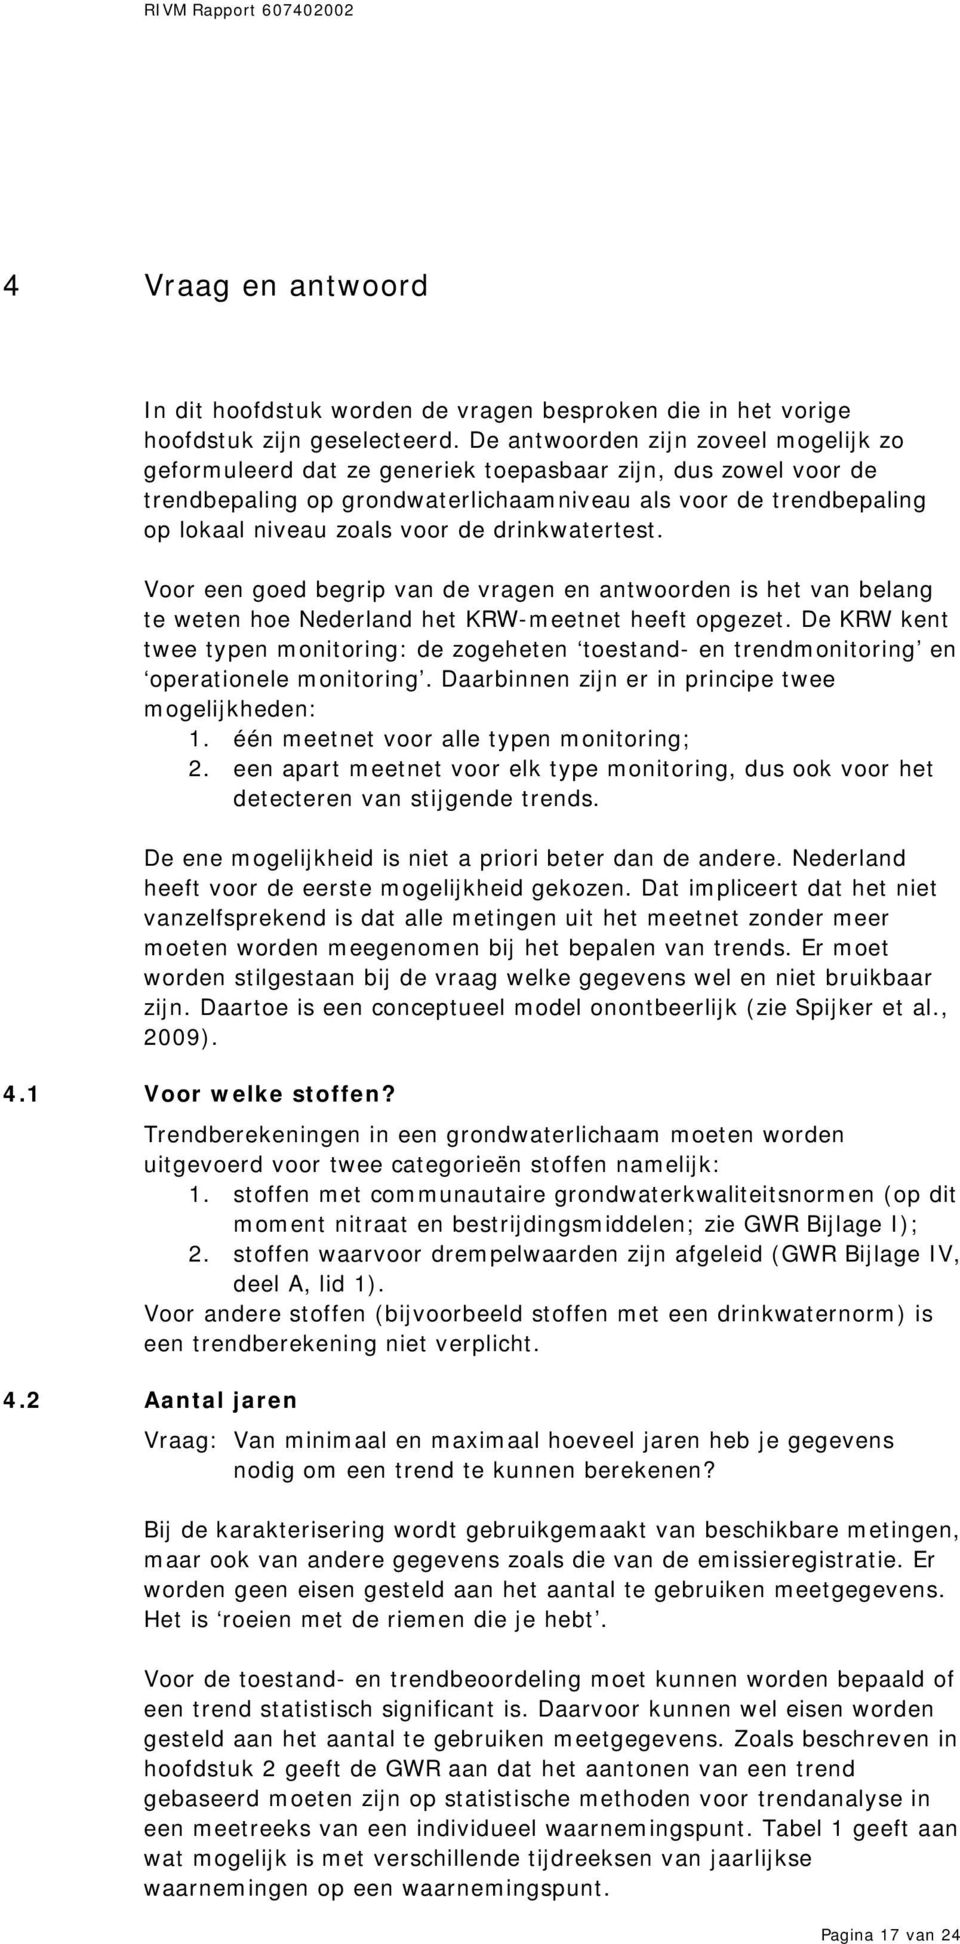 drinkwatertest. Voor een goed begrip van de vragen en antwoorden is het van belang te weten hoe Nederland het KRW-meetnet heeft opgezet.